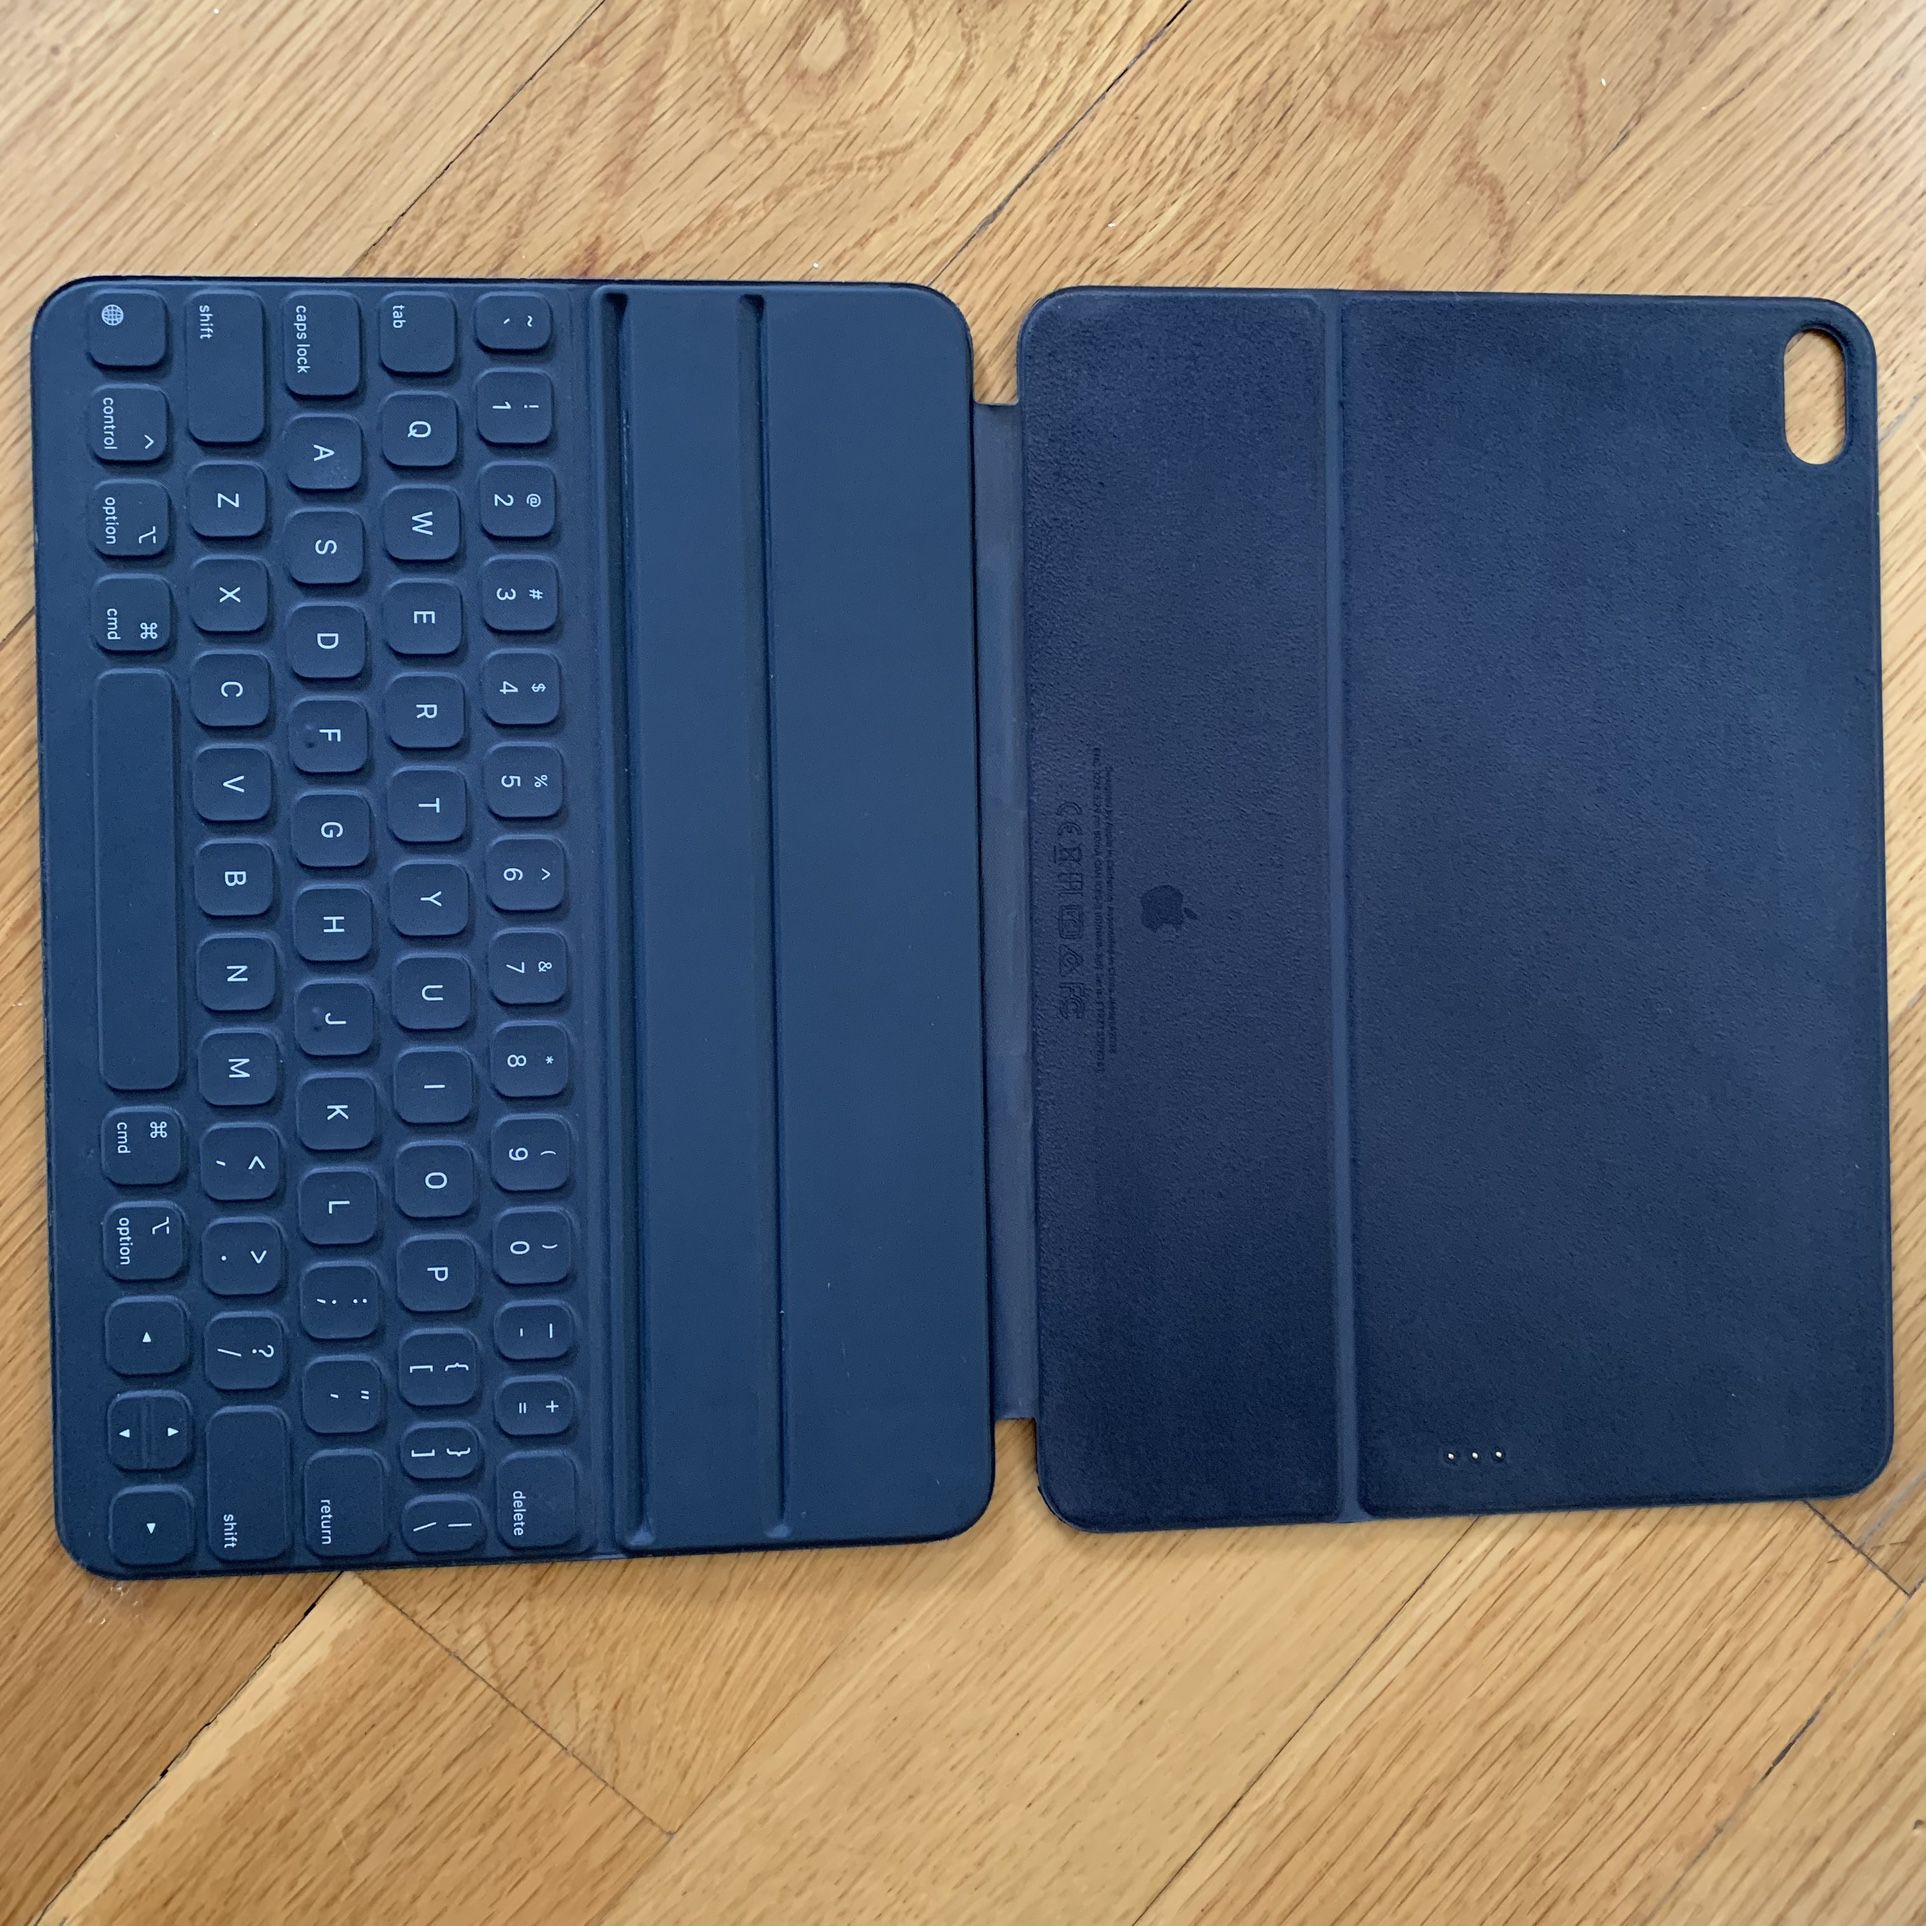 Apple iPad Keyboard Case Apple MXNK2LL/A Smart Keyboard